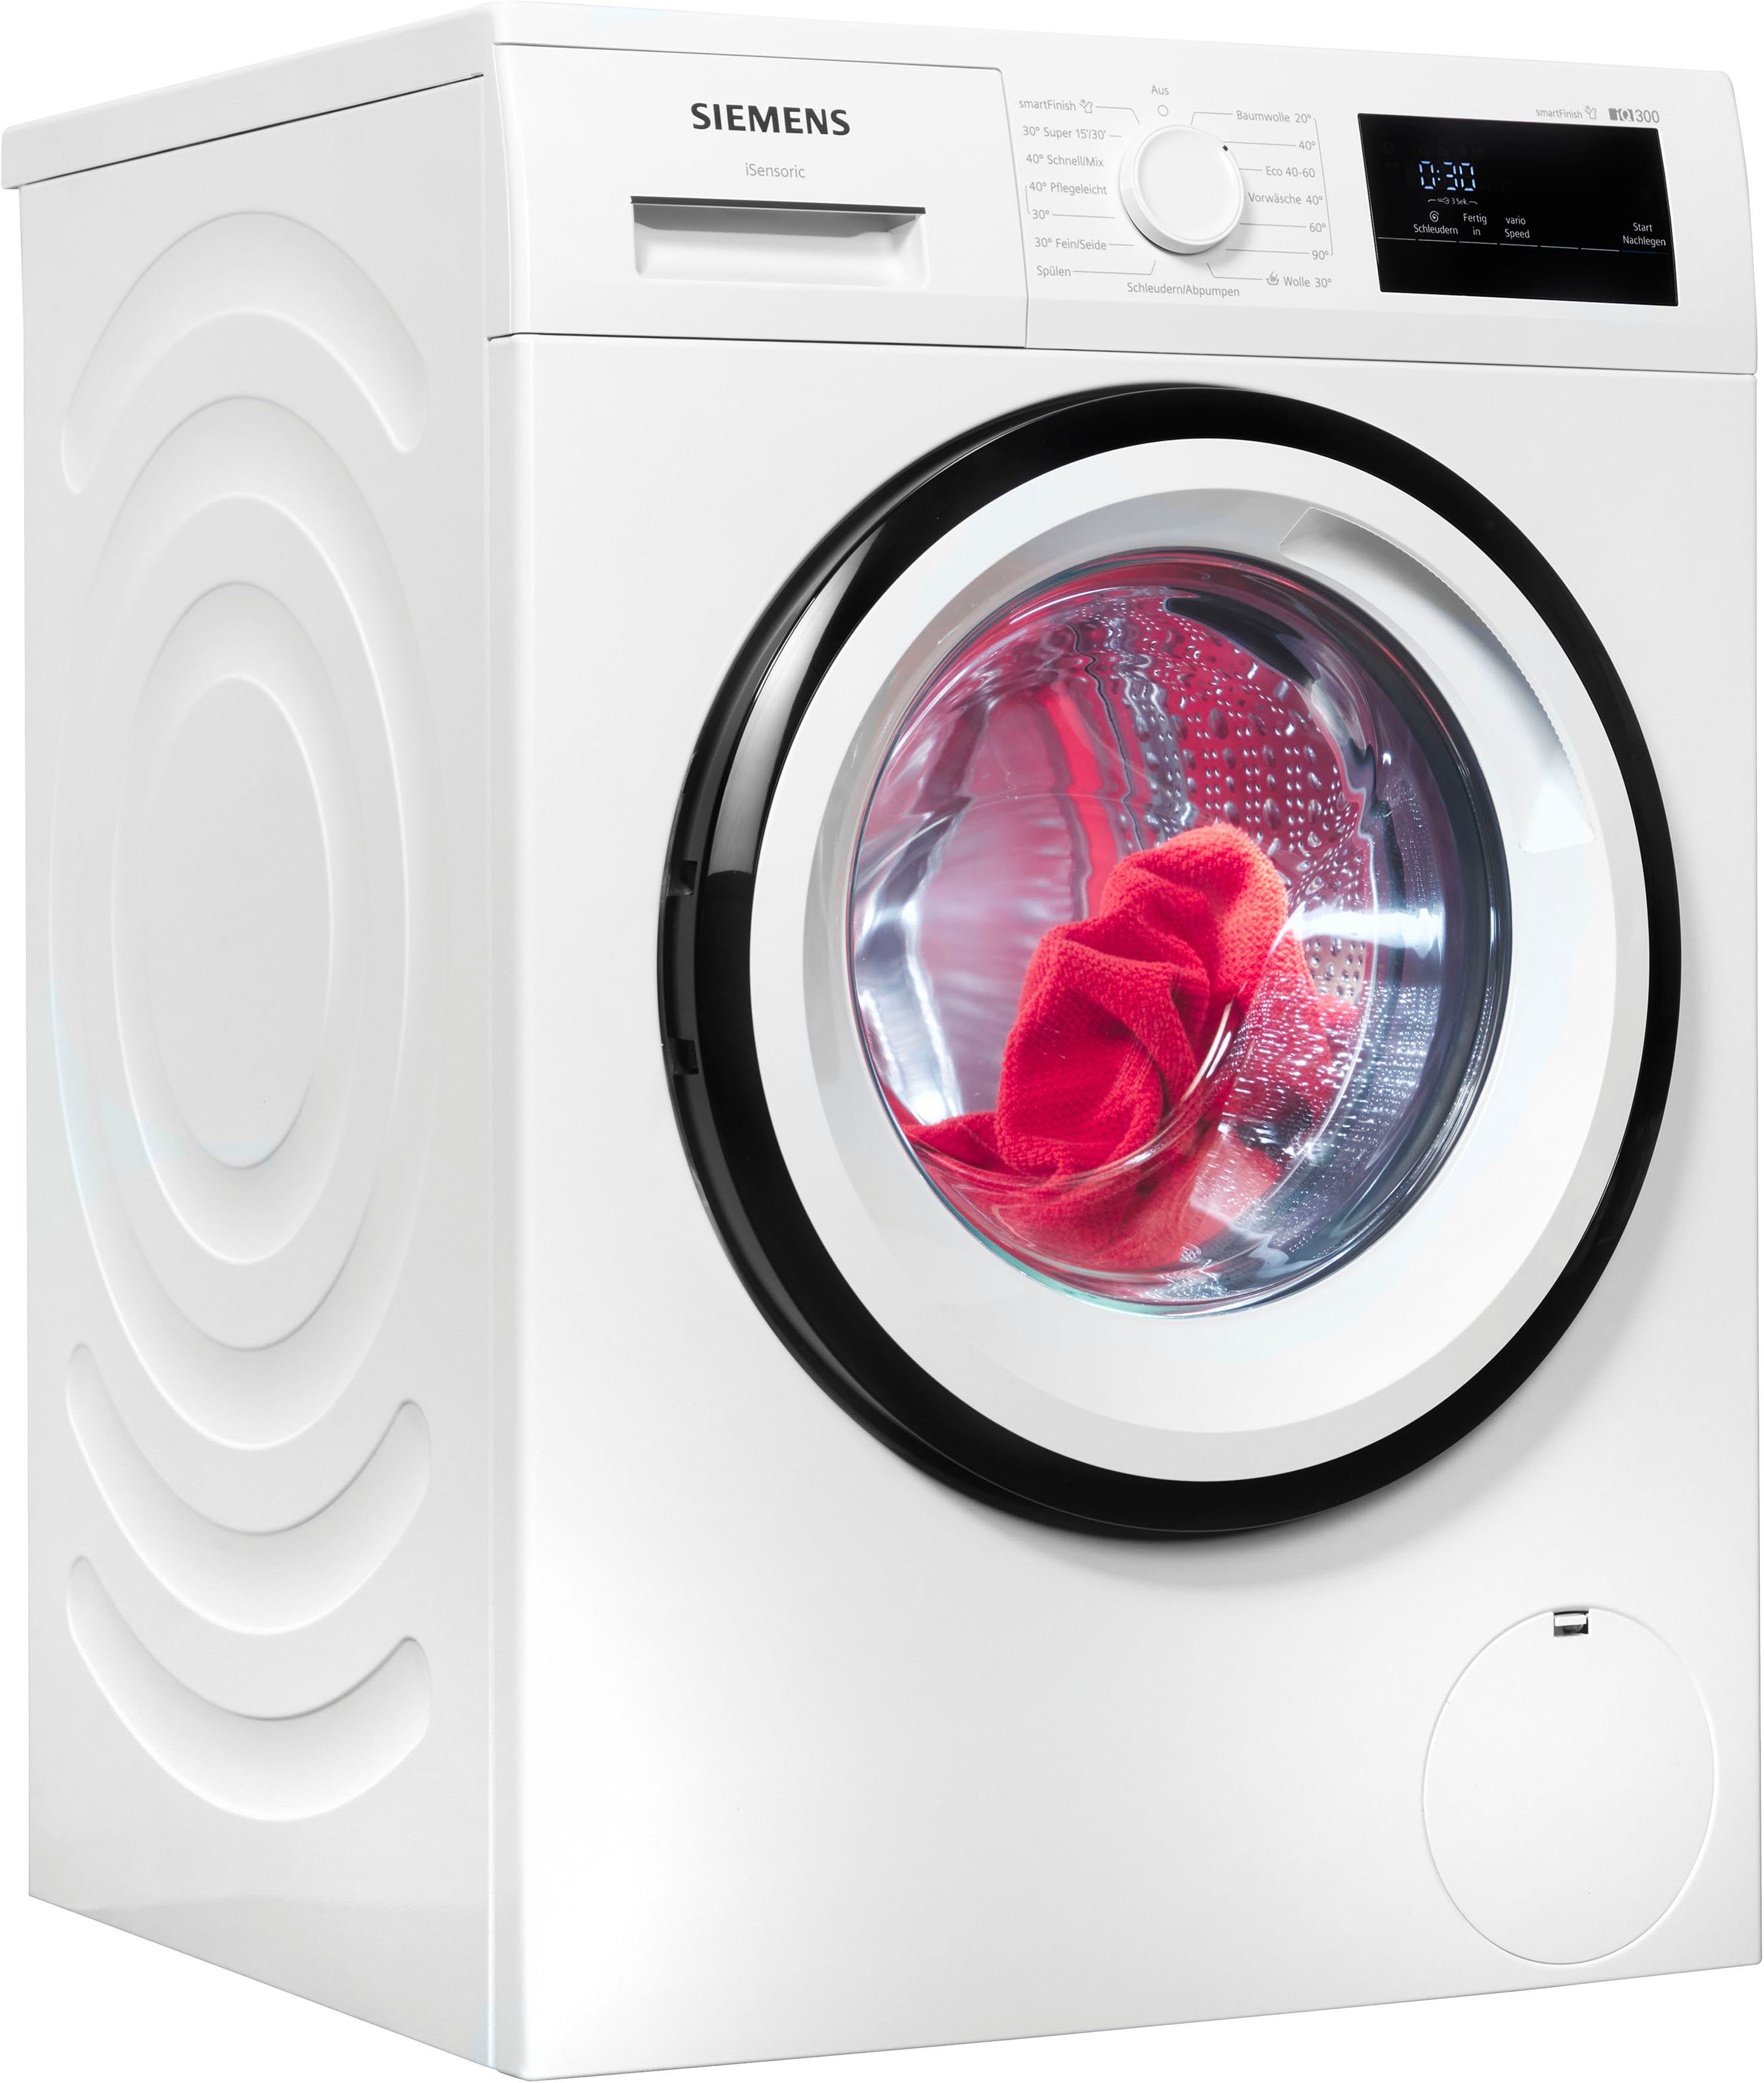 Dampf SIEMENS smartFinish Knitterfalten glättet dank Waschmaschine U/min, iQ300 8 sämtliche WM14N0A4, – kg, 1400